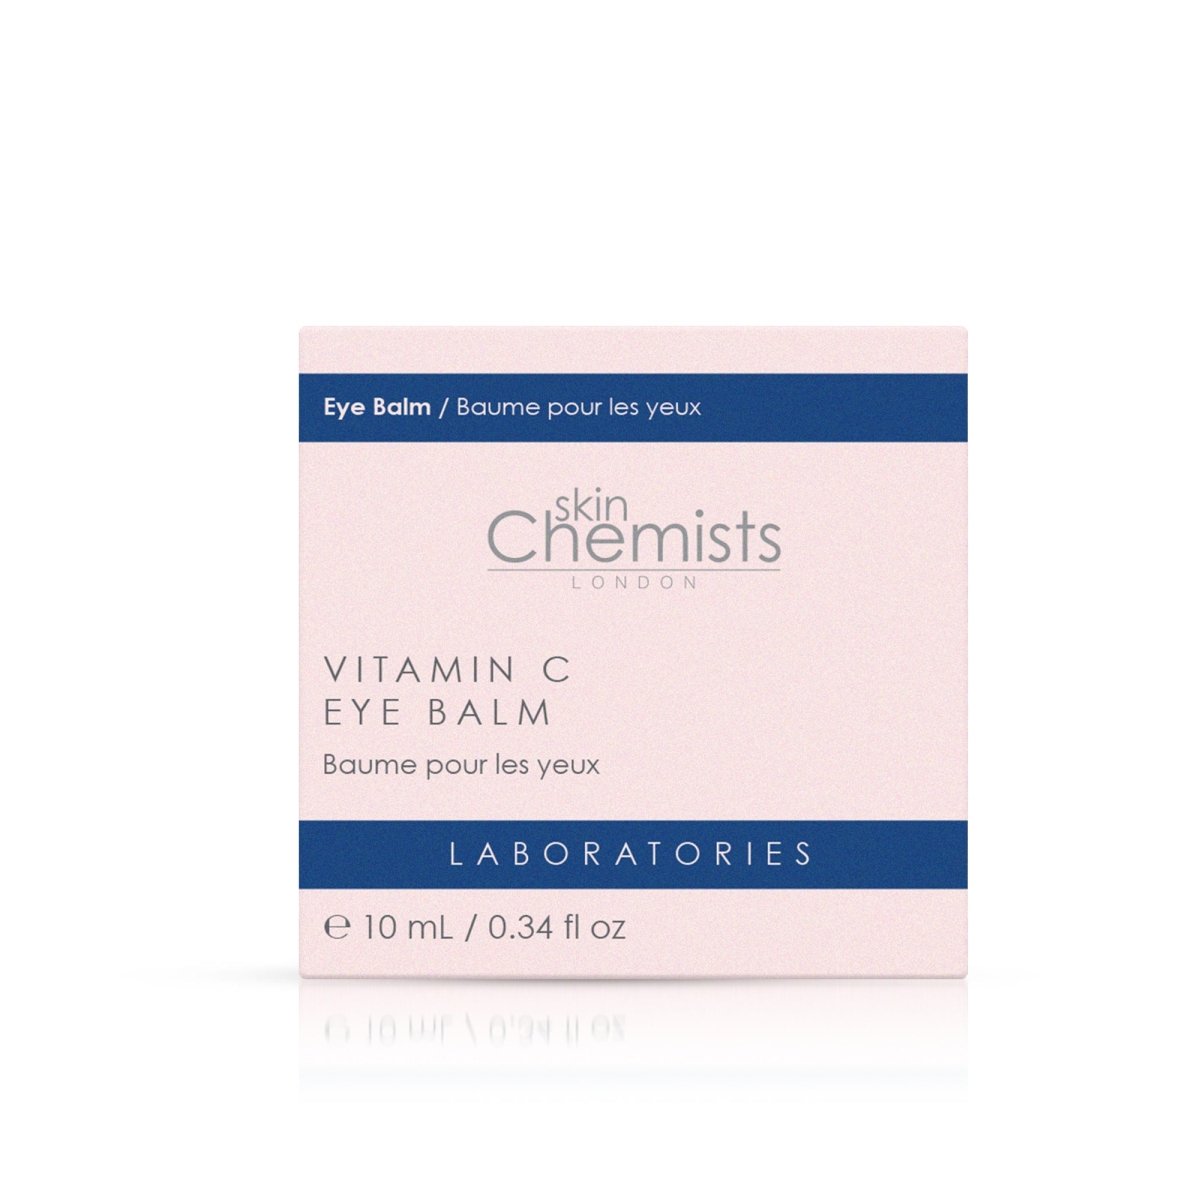 Laboratories Vitamin C Eye Balm 10ml - skinChemists